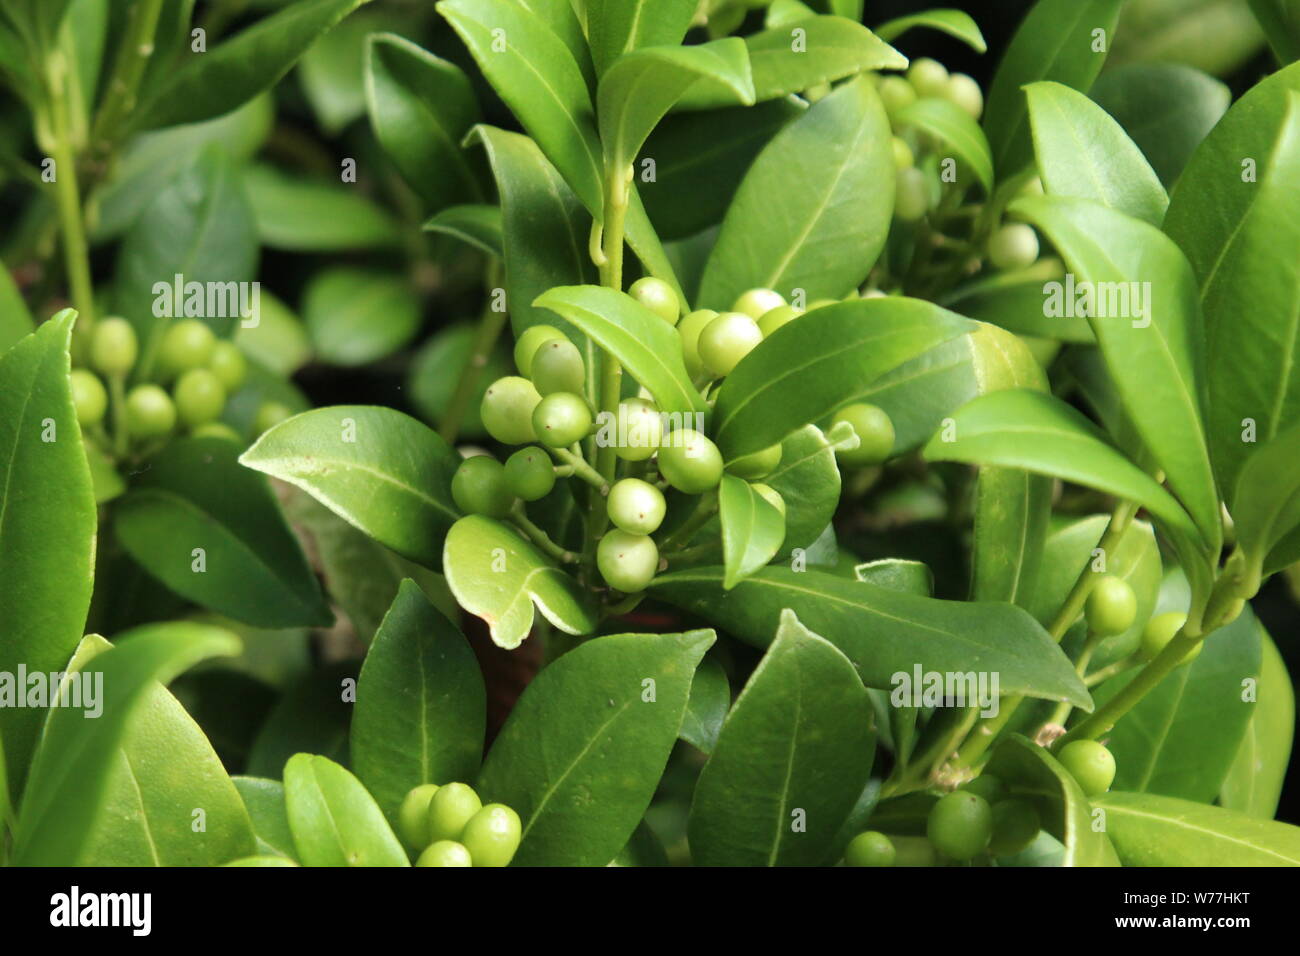 Close up de végétaux à feuilles vertes et les petites baies vertes Banque D'Images